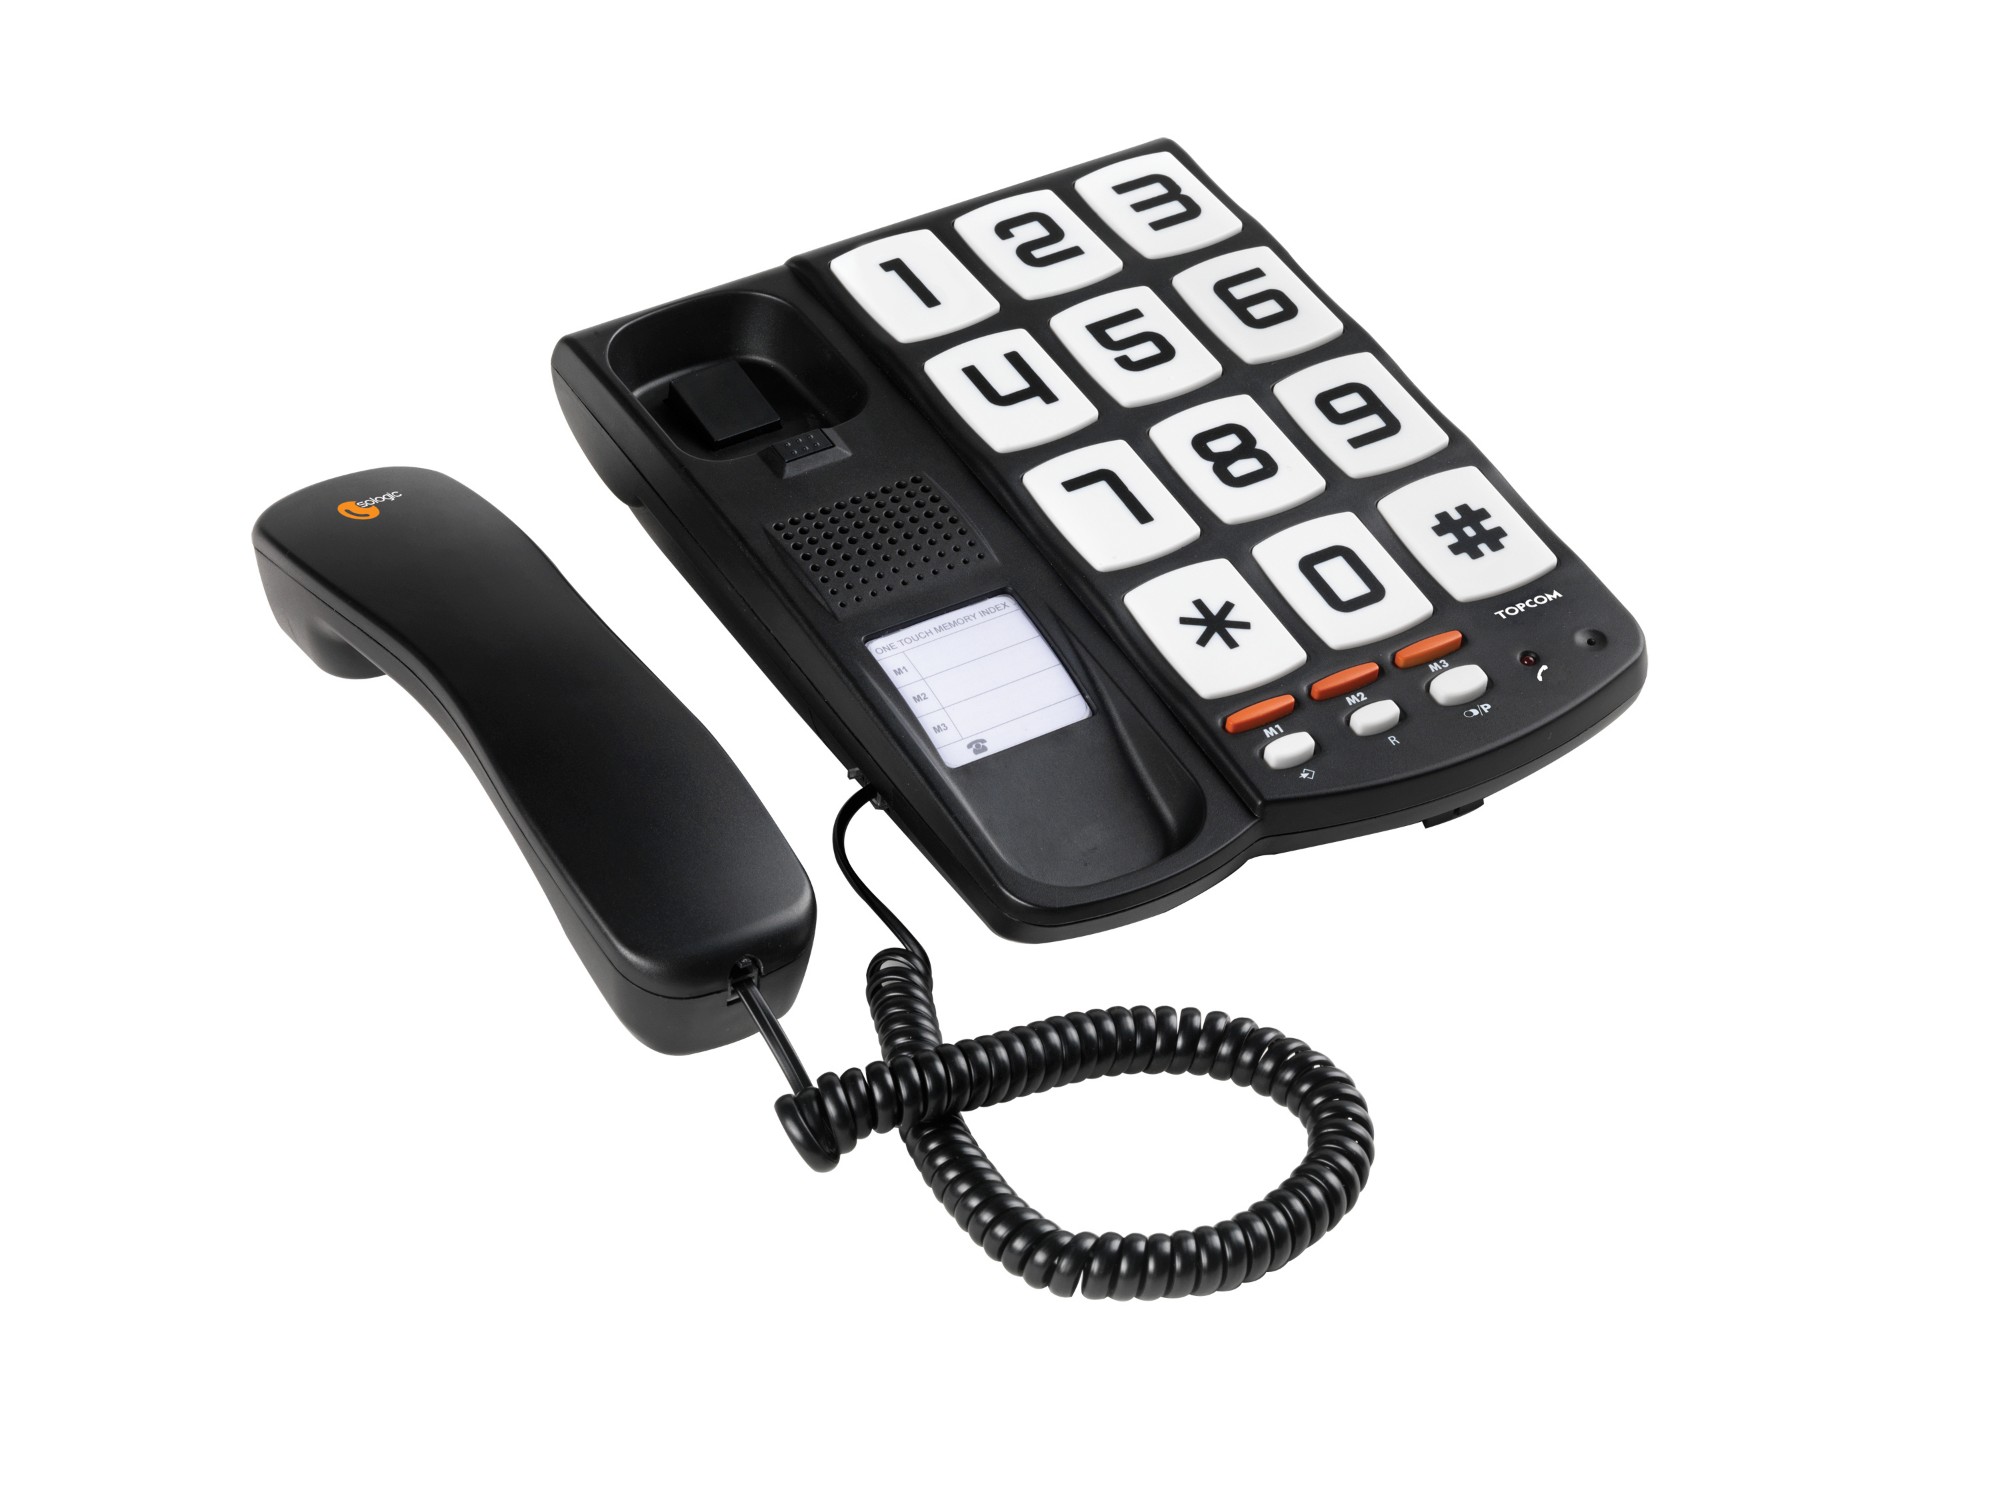 Topcom TS-6650 Téléphone à touches géantes - Sologic T101